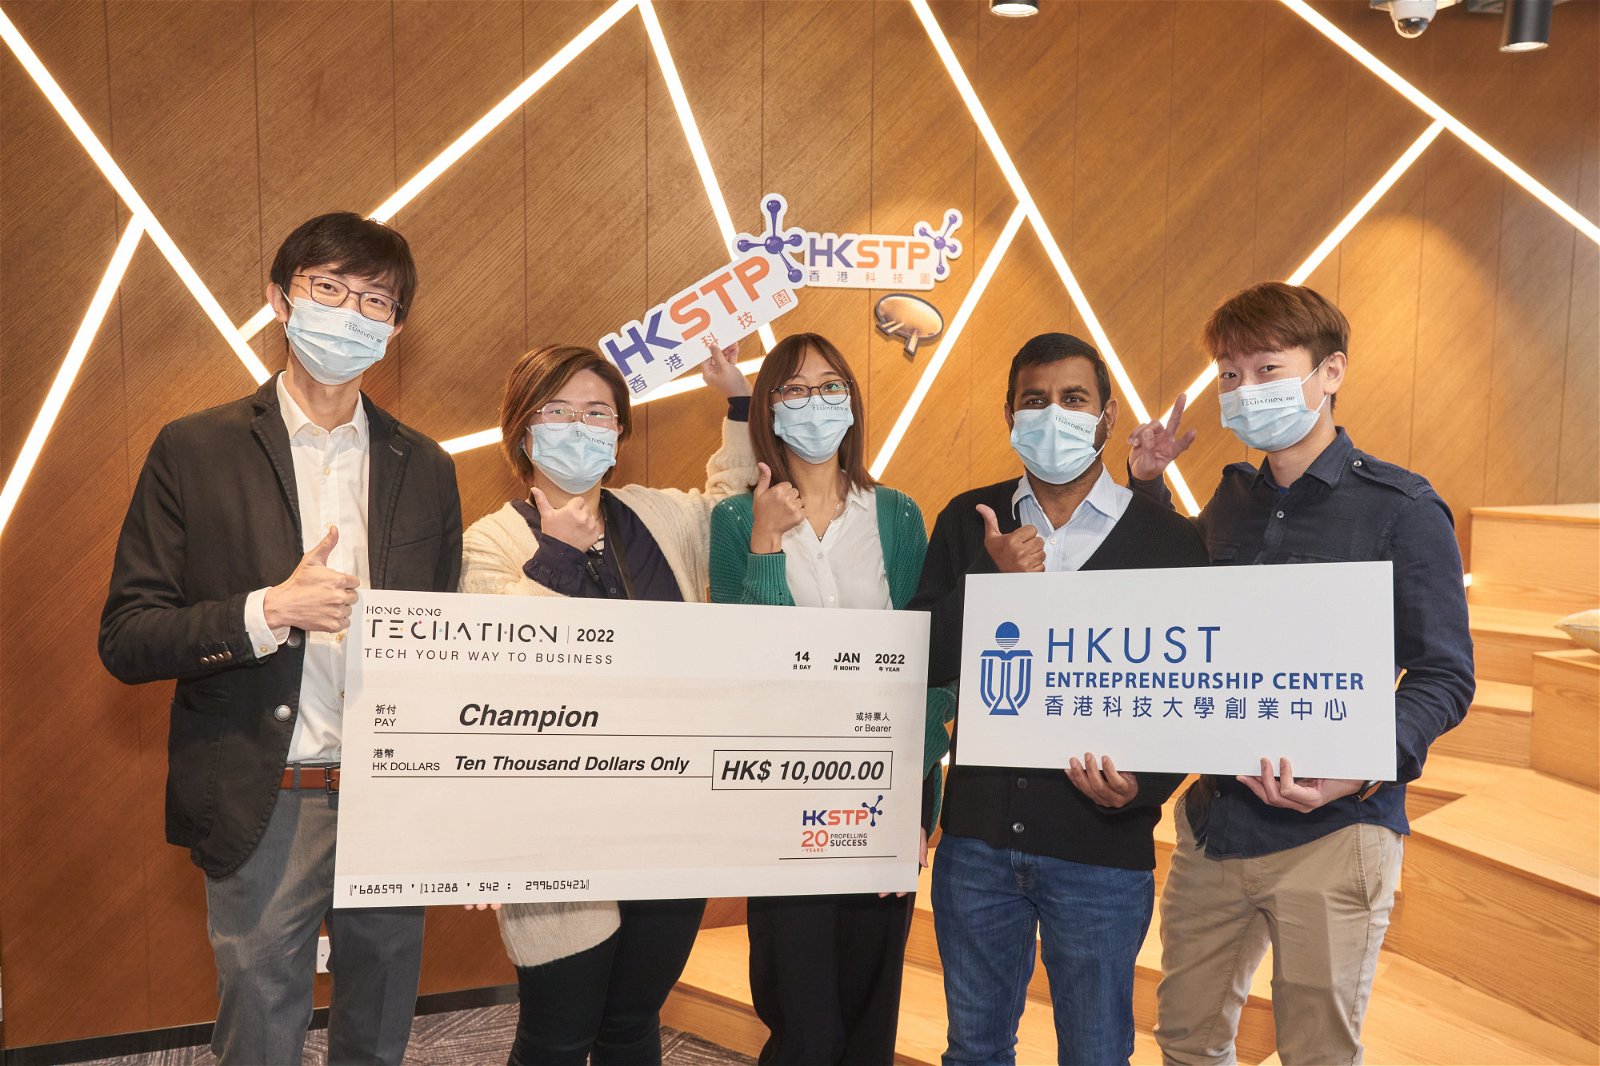 曾靖婷（左二）及 团队的水凝胶传递药物商品化方案刚夺得由港科大协办的Hong Kong Techathon 2022 - Tech Your Way To Business冠军。